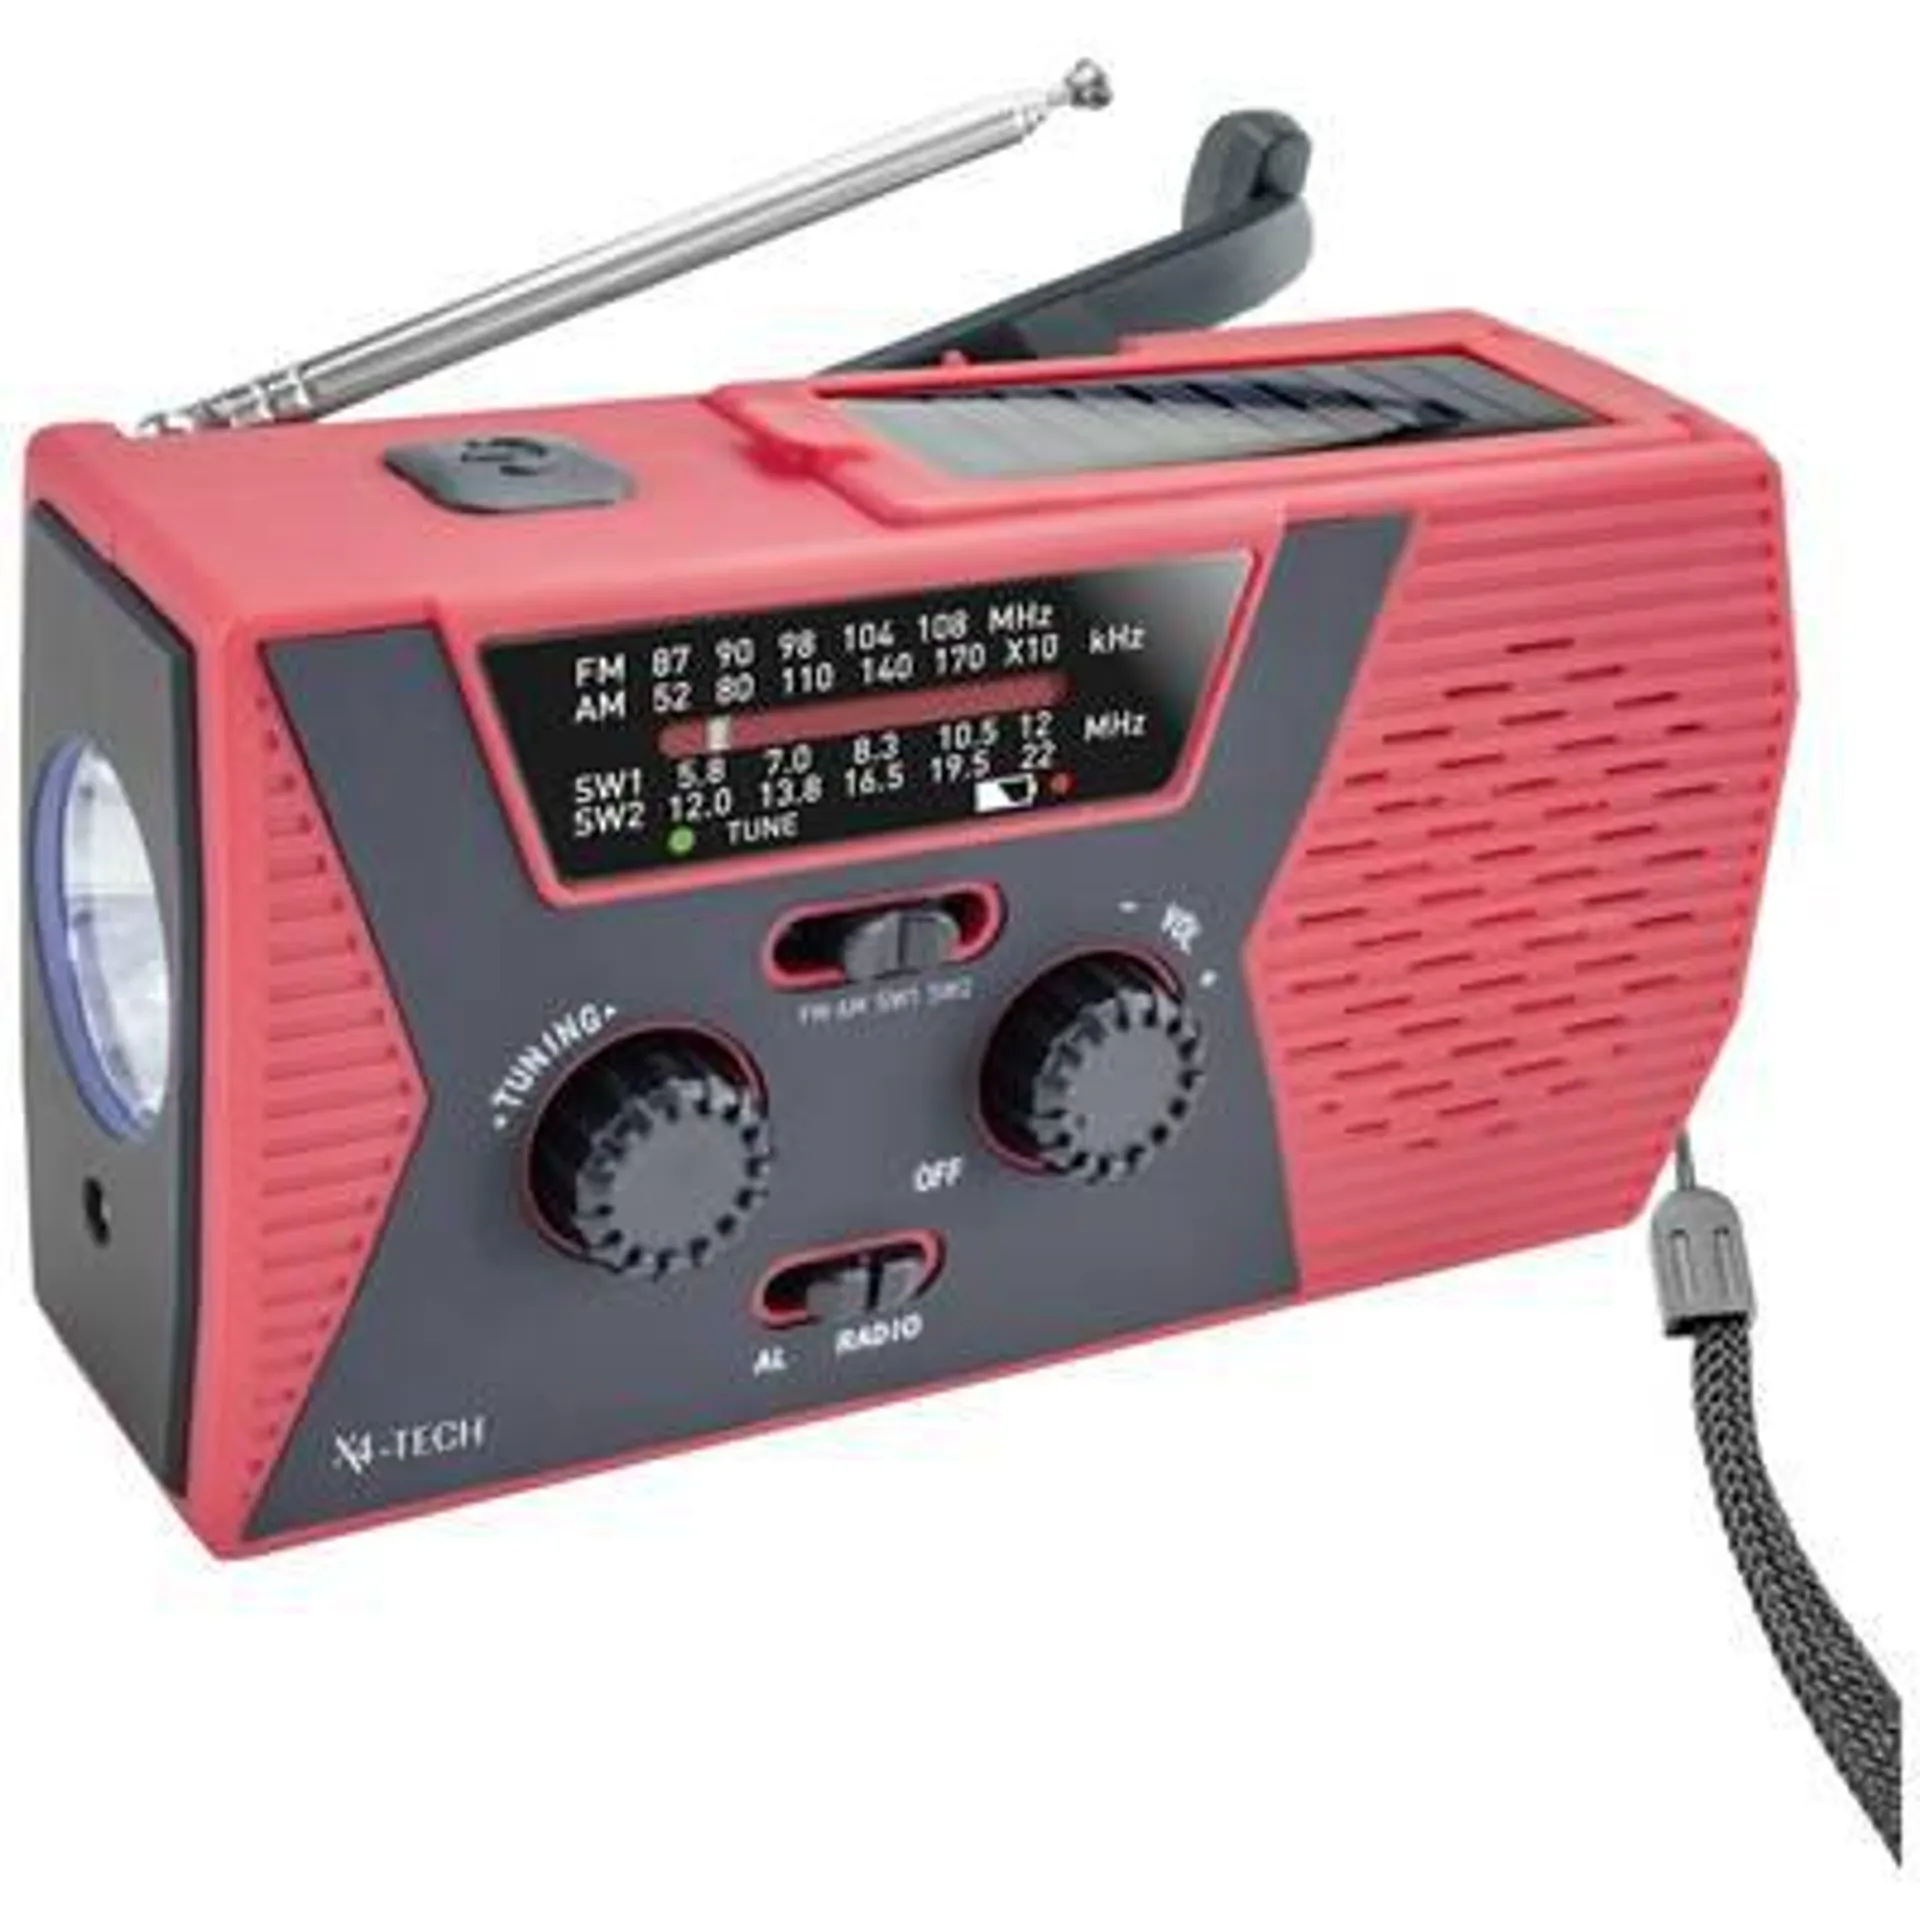 X4 Tech X4-TECH Notfallradio FM, AM, KW Akku-Ladefunktion, Handkurbel, Solarpanel, Taschenlampe, wiederaufladbar, spri